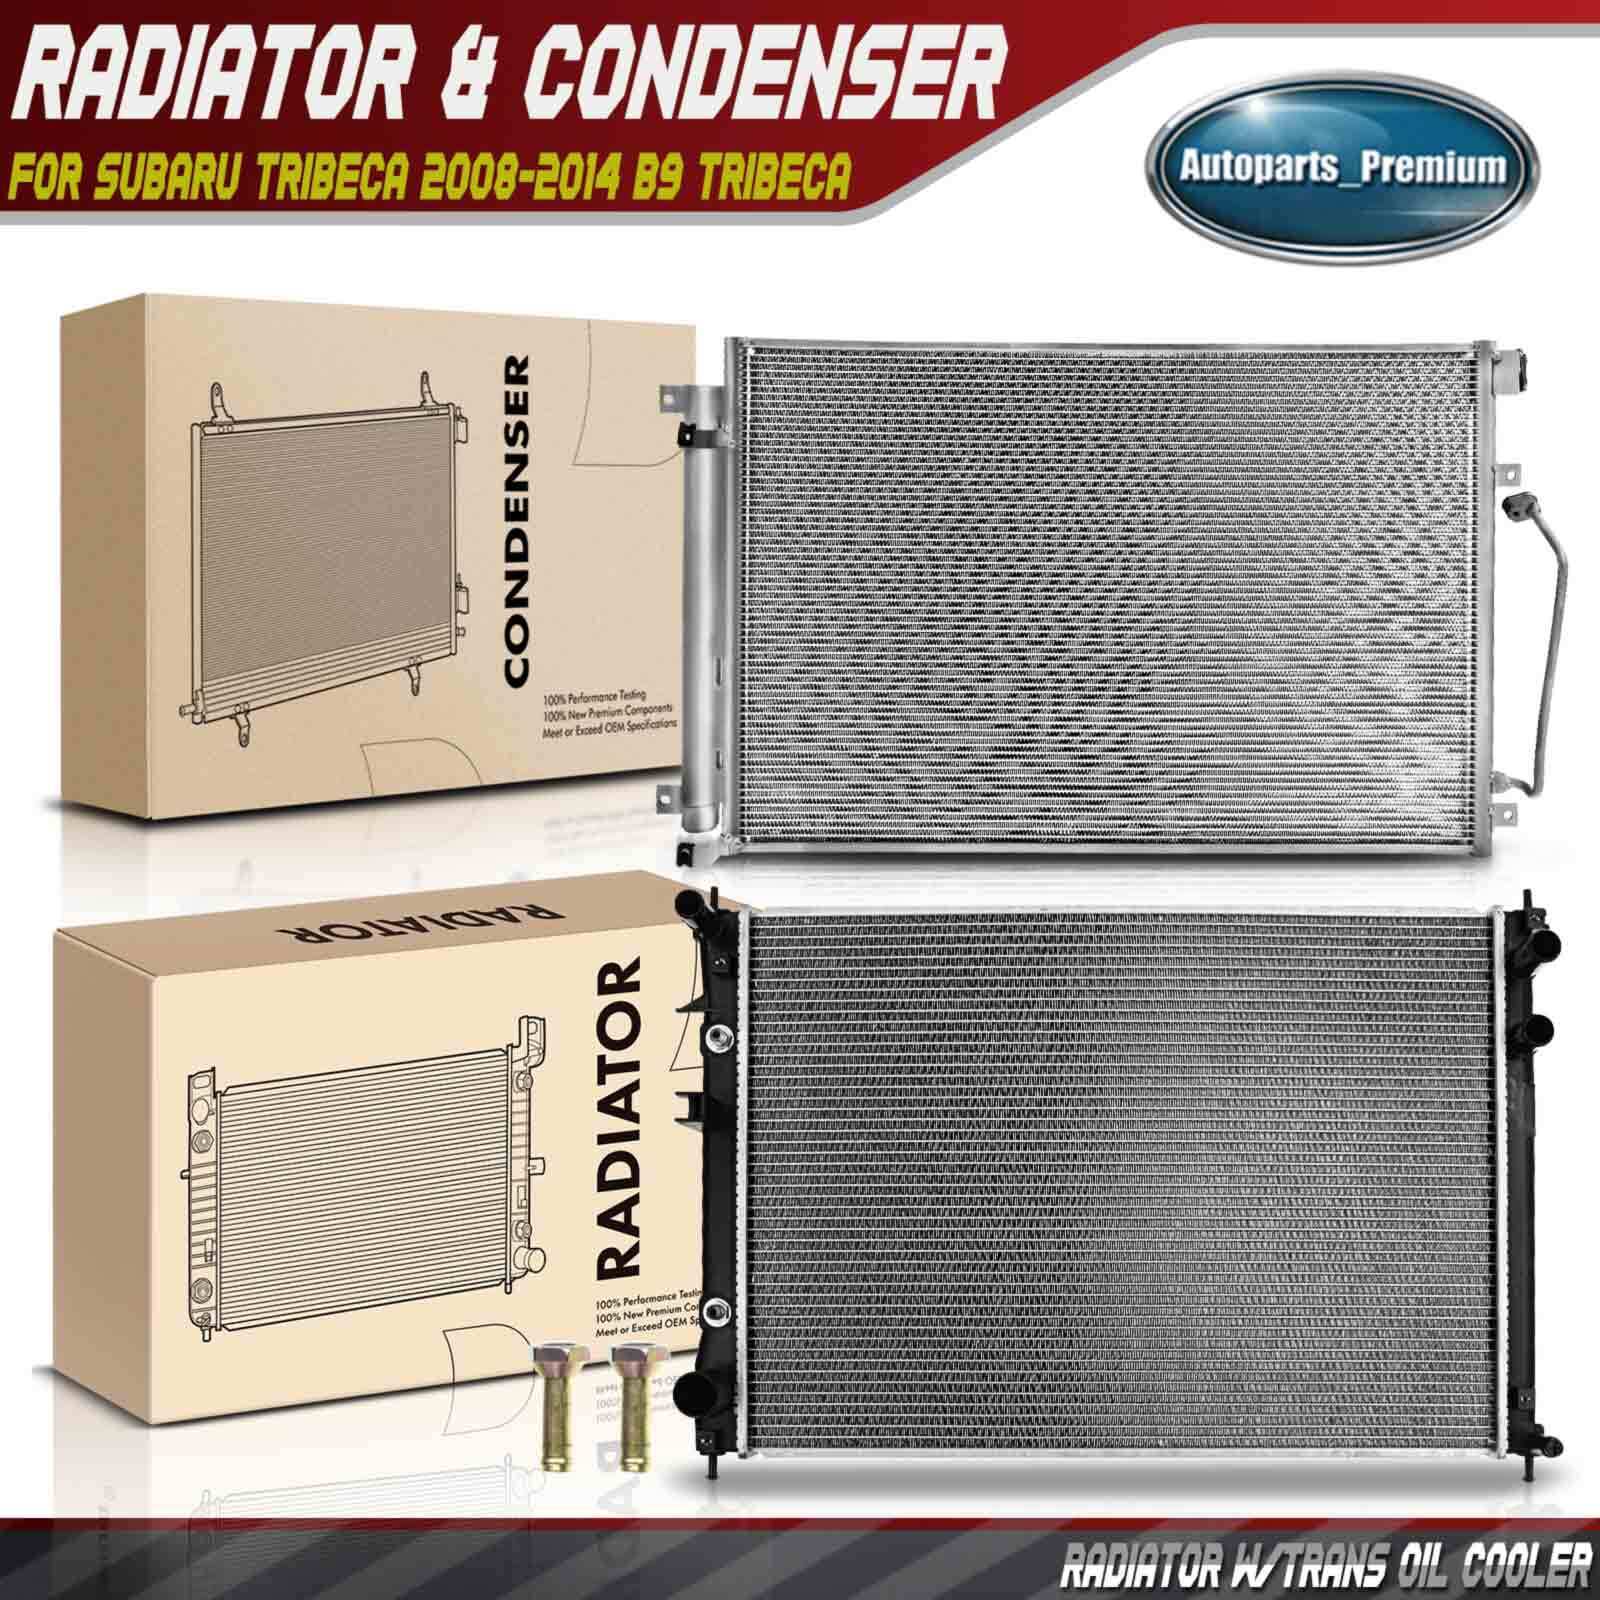 Radiator & AC Condenser Cooling for Subaru Tribeca 2008-2014 B9 Tribeca 06-07